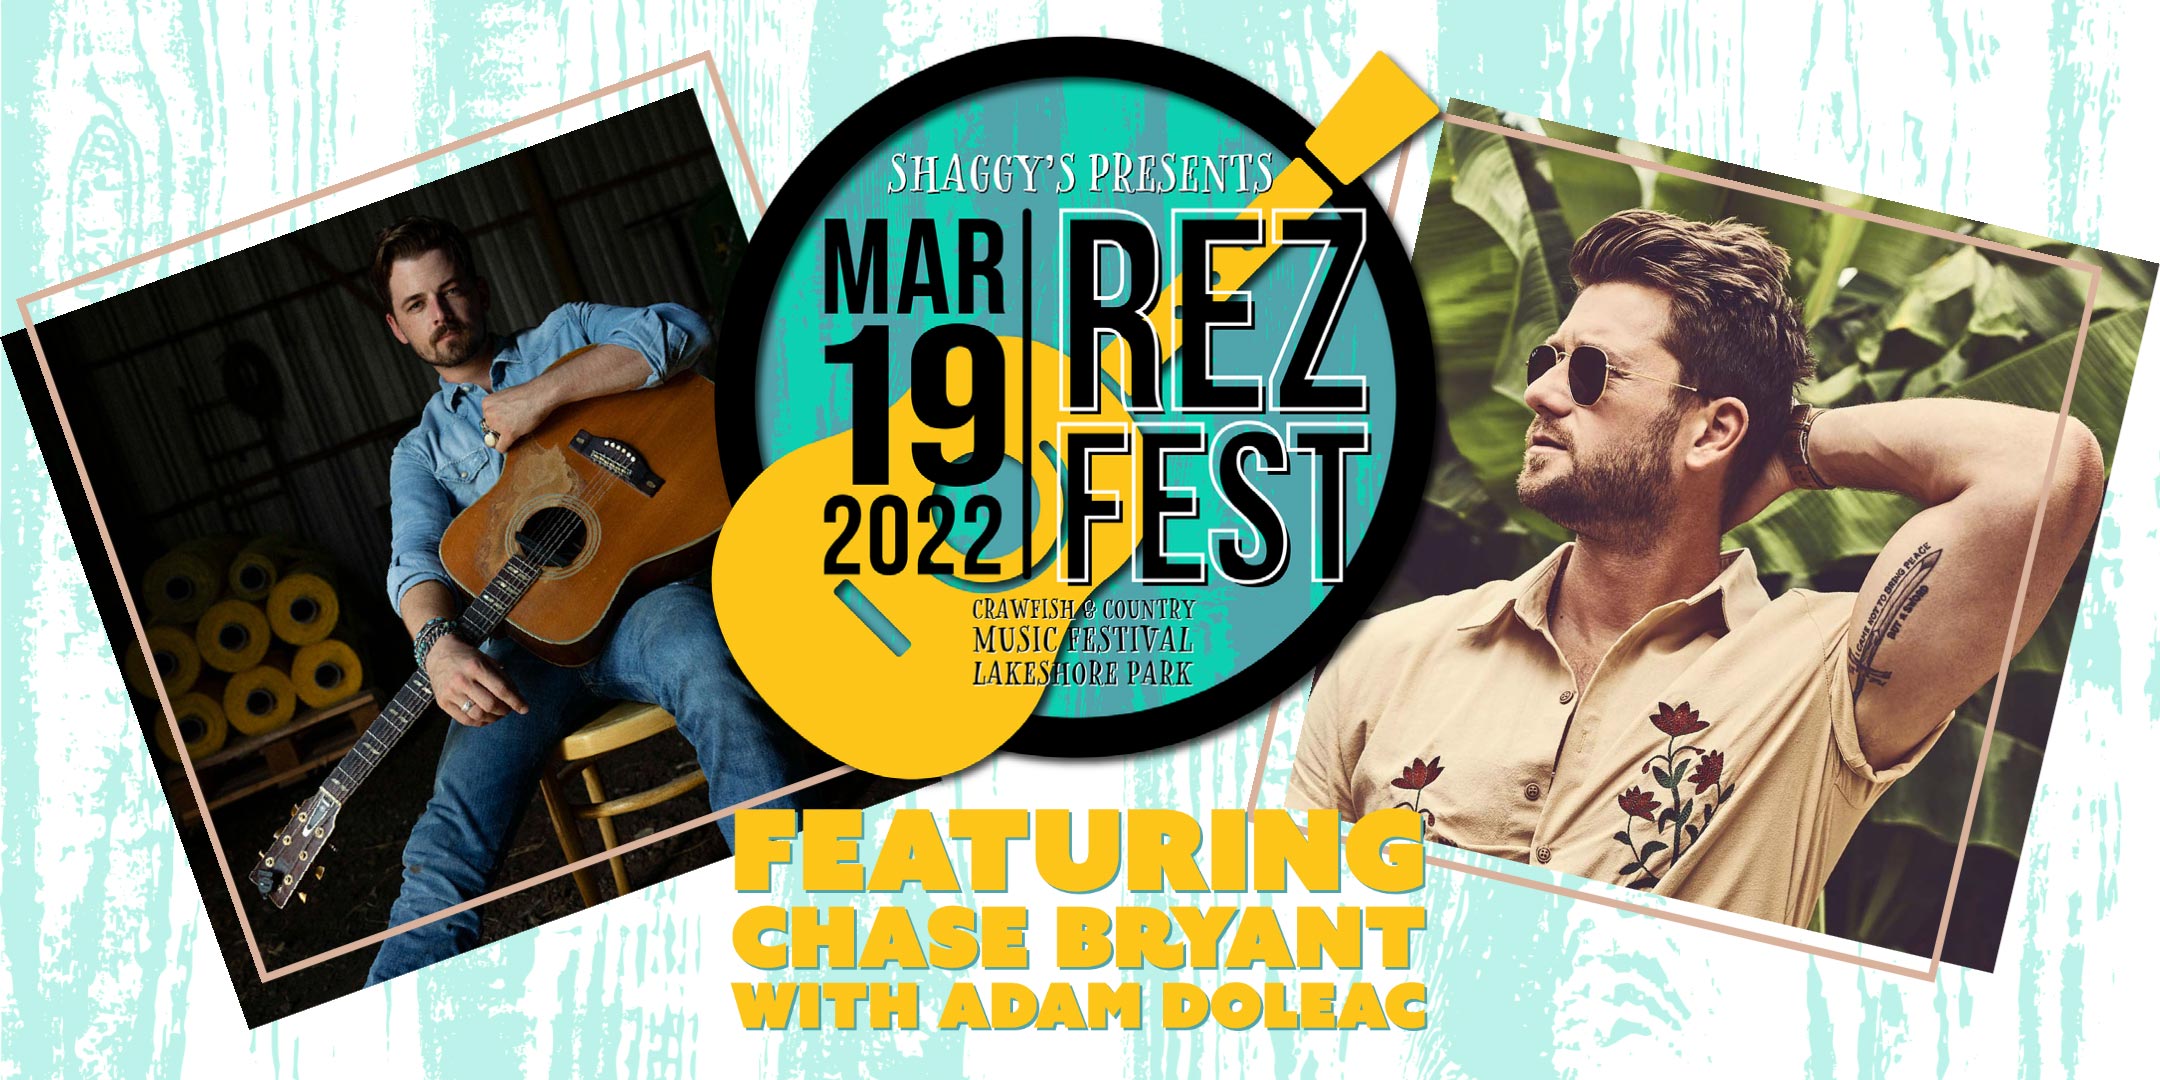 Shaggy's Rez Fest on March 19, 2022 at Lakeshore Park